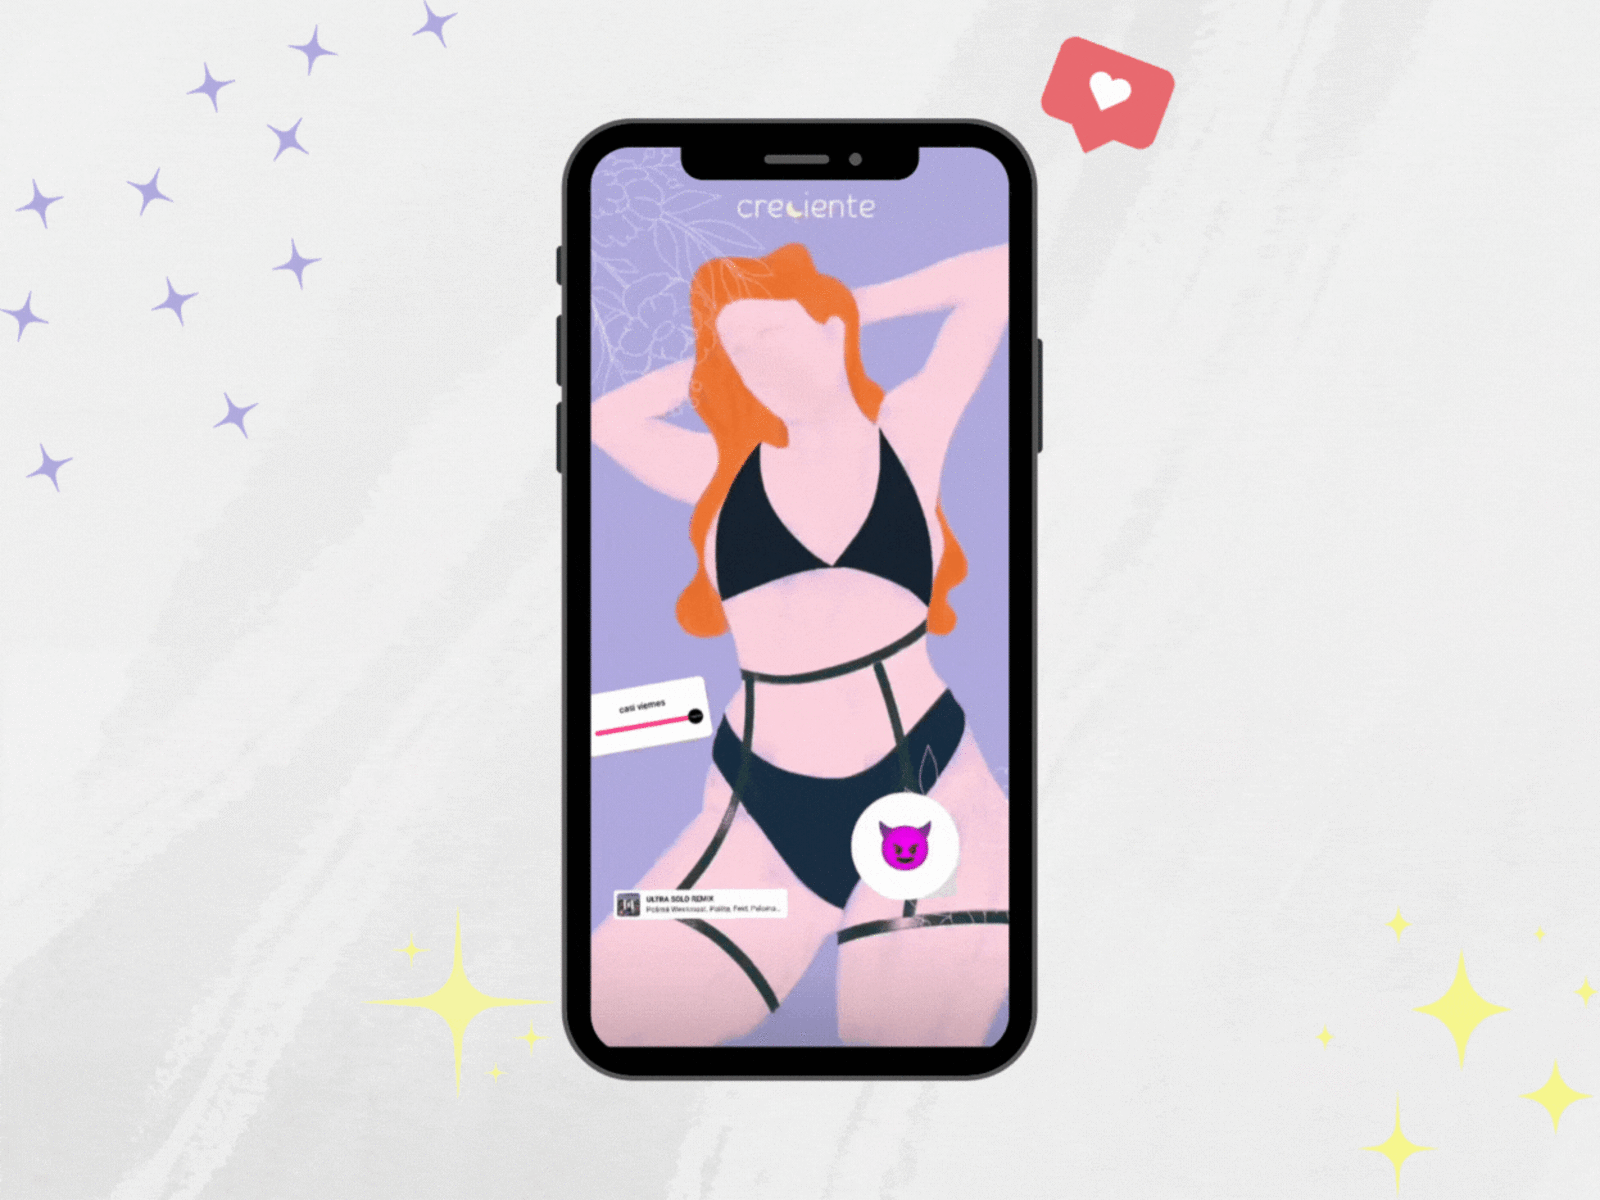 Instagram Stories creciente design graphic design icon illustration lenceria lingerie ropainterior ui underwear ux vector